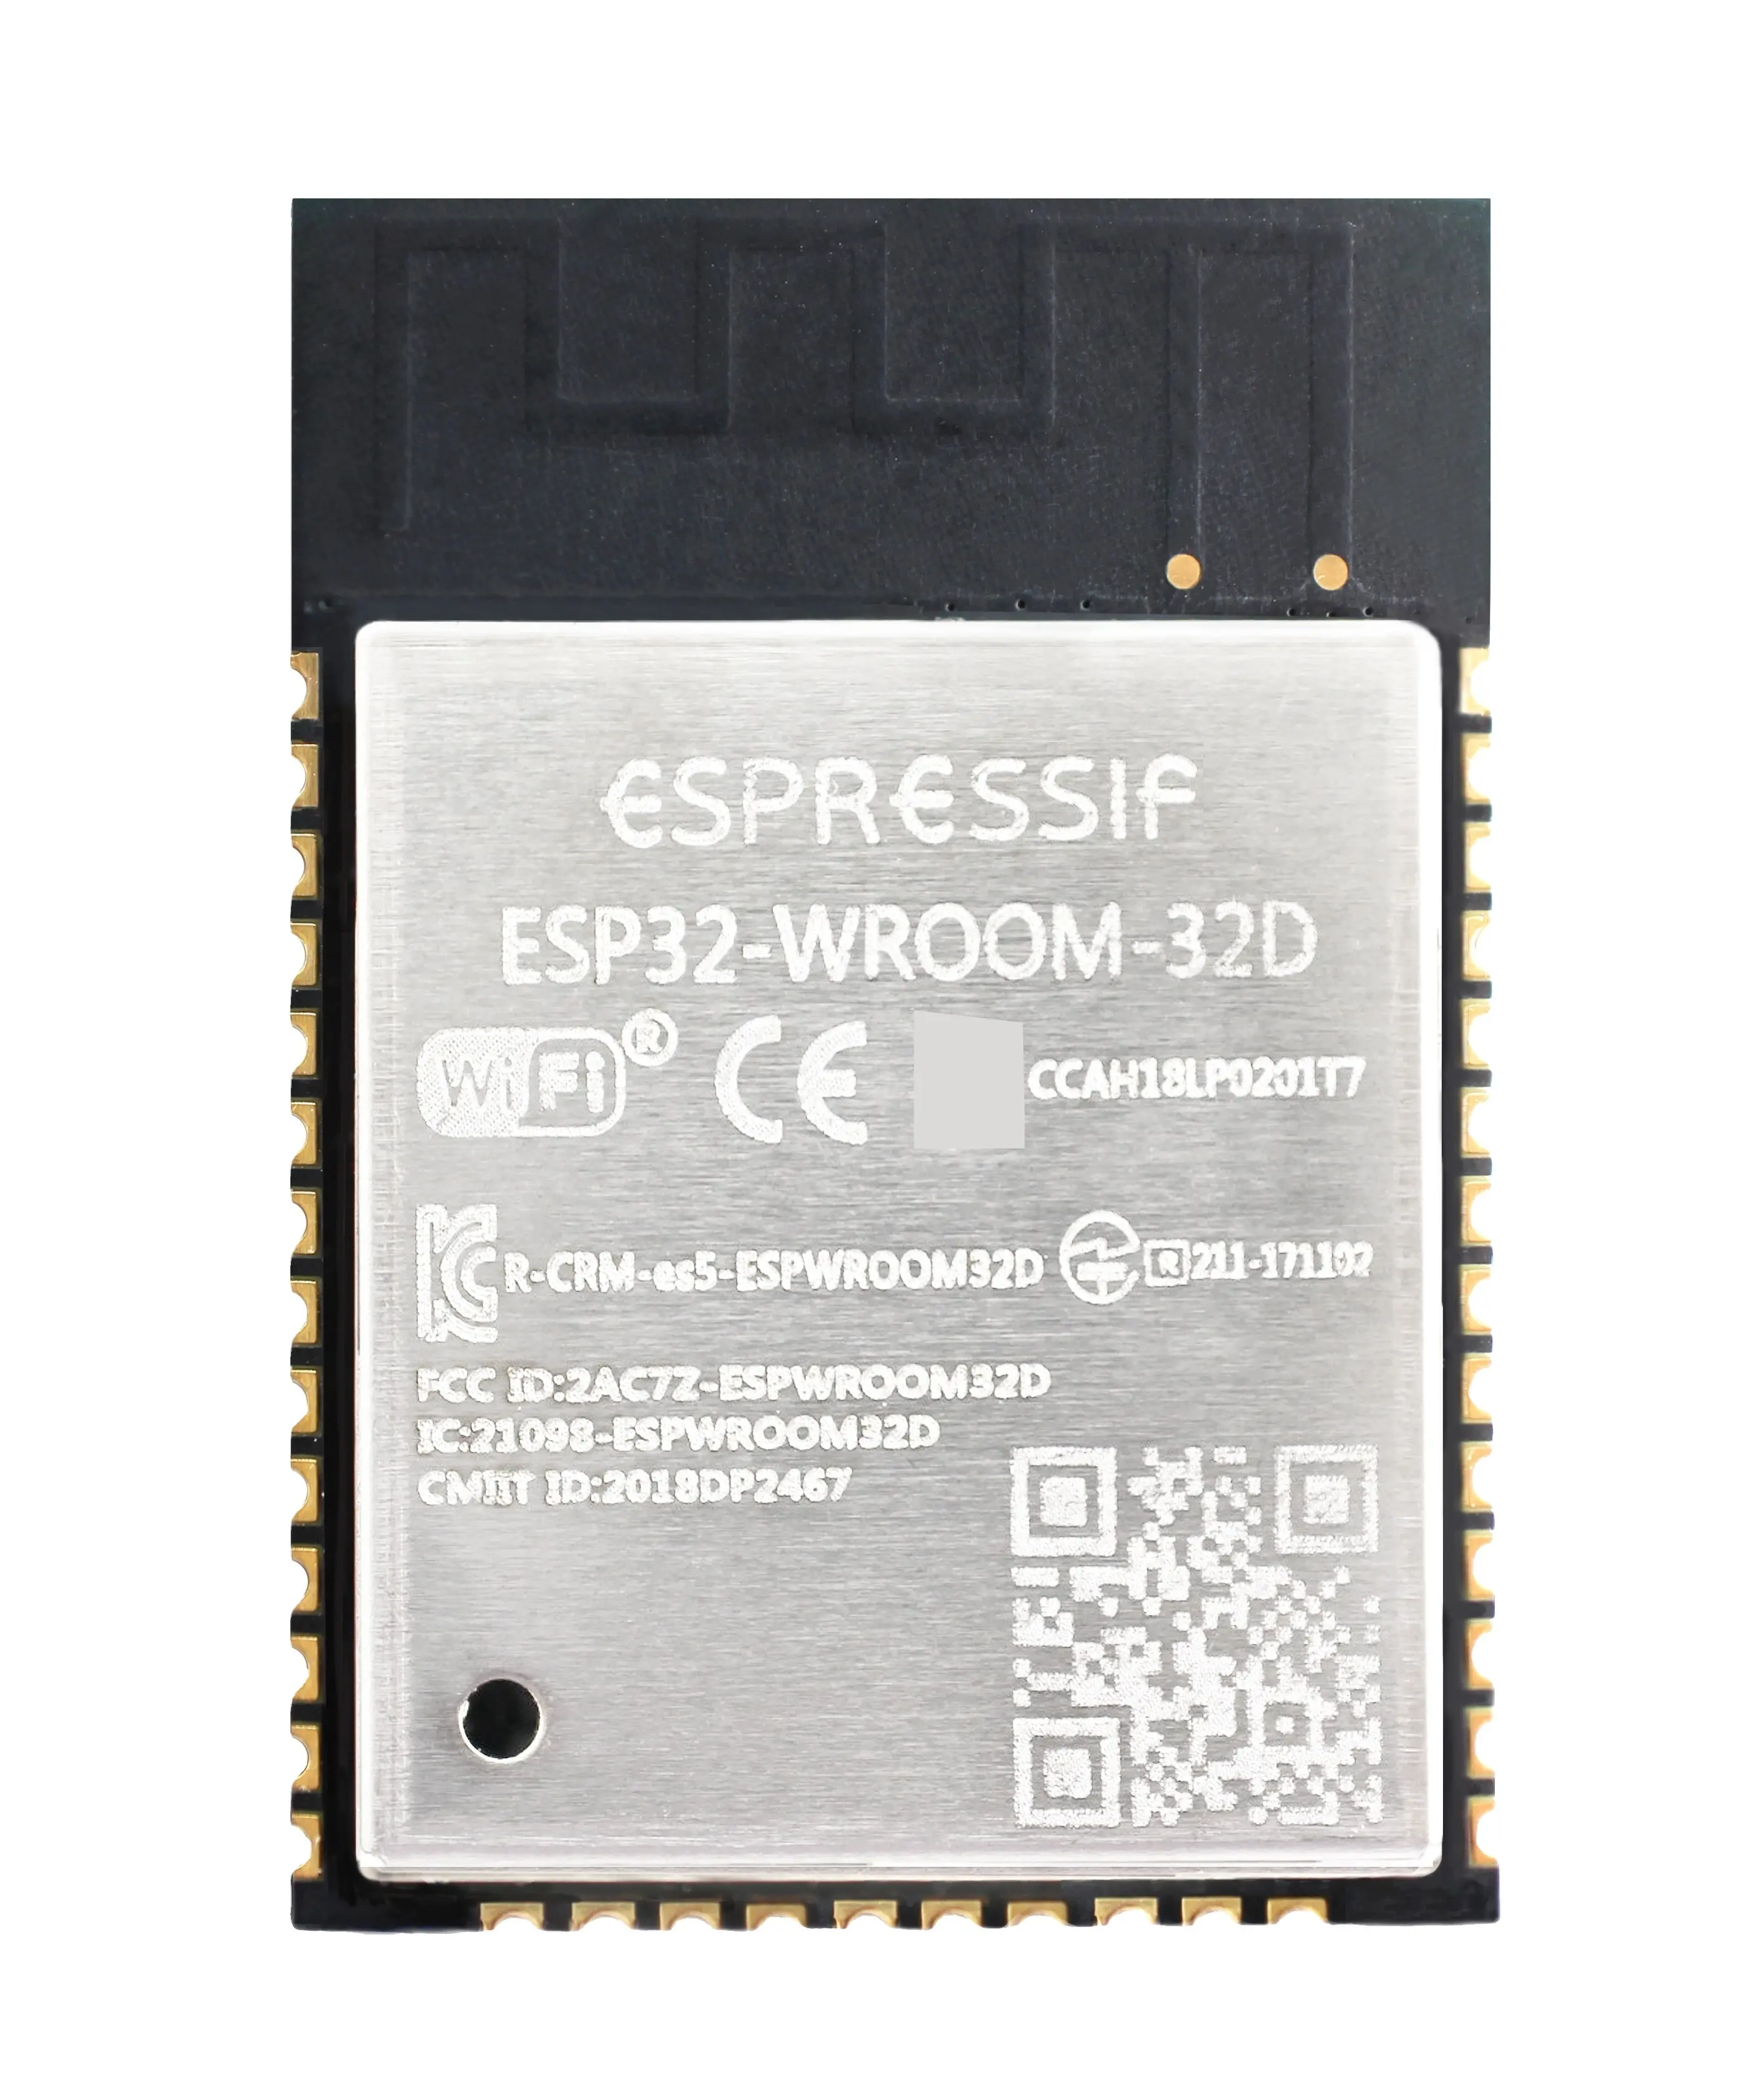 ESP32-WROOM-32 ESP32-WROOM-32D asli baru (16MB) WiFi + modul pcb seri ESP32 ke modul WiFi